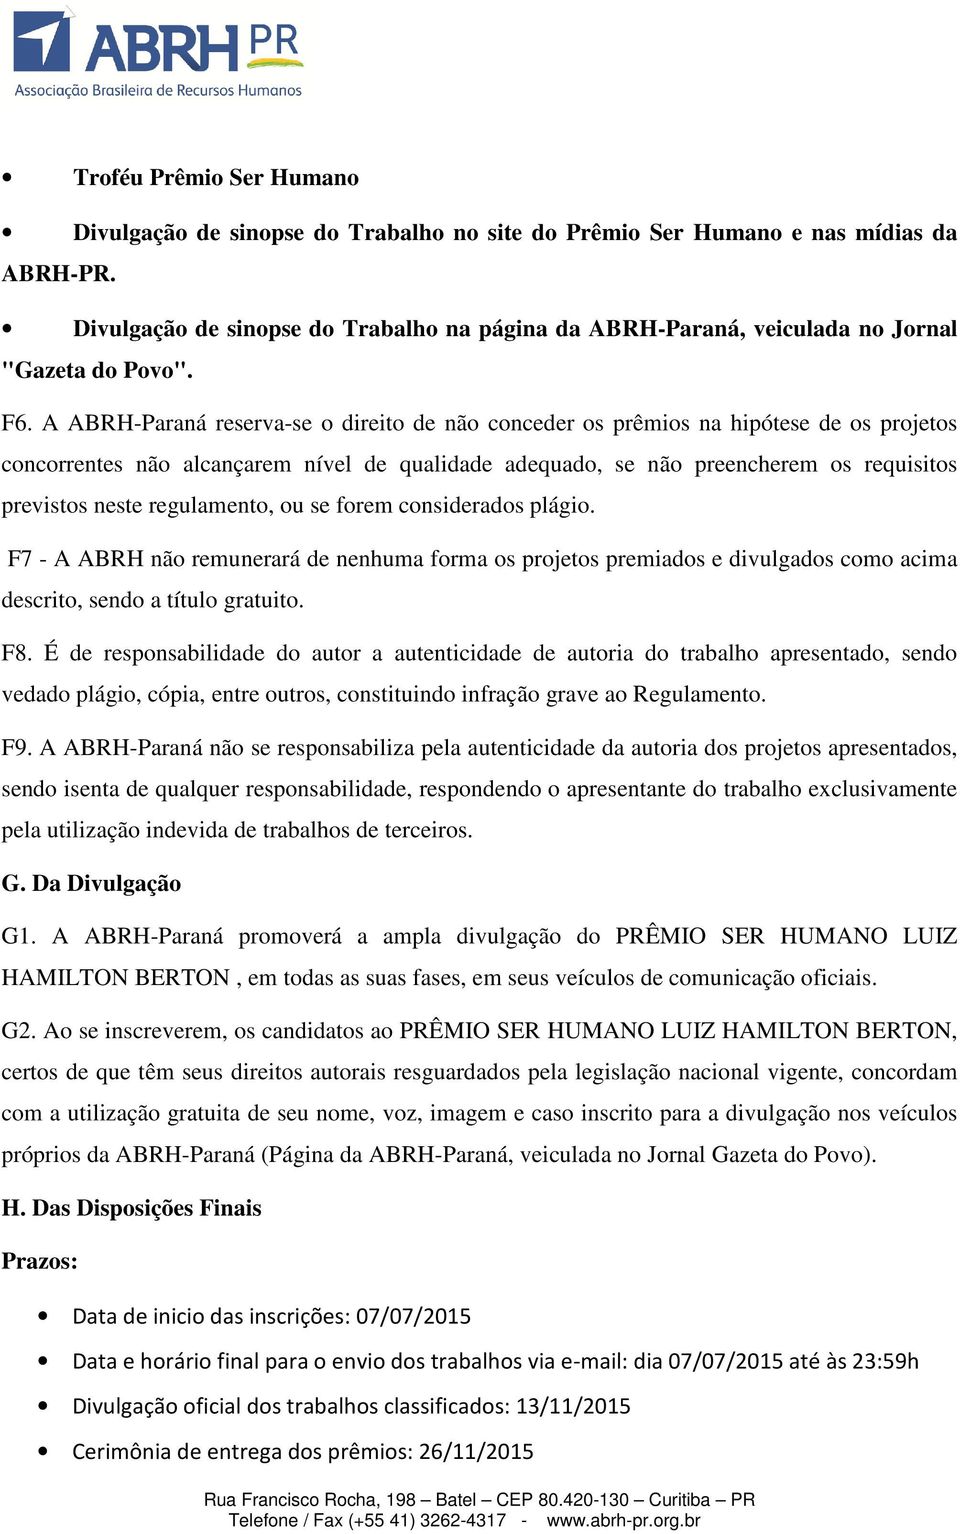 A ABRH-Paraná reserva-se o direito de não conceder os prêmios na hipótese de os projetos concorrentes não alcançarem nível de qualidade adequado, se não preencherem os requisitos previstos neste